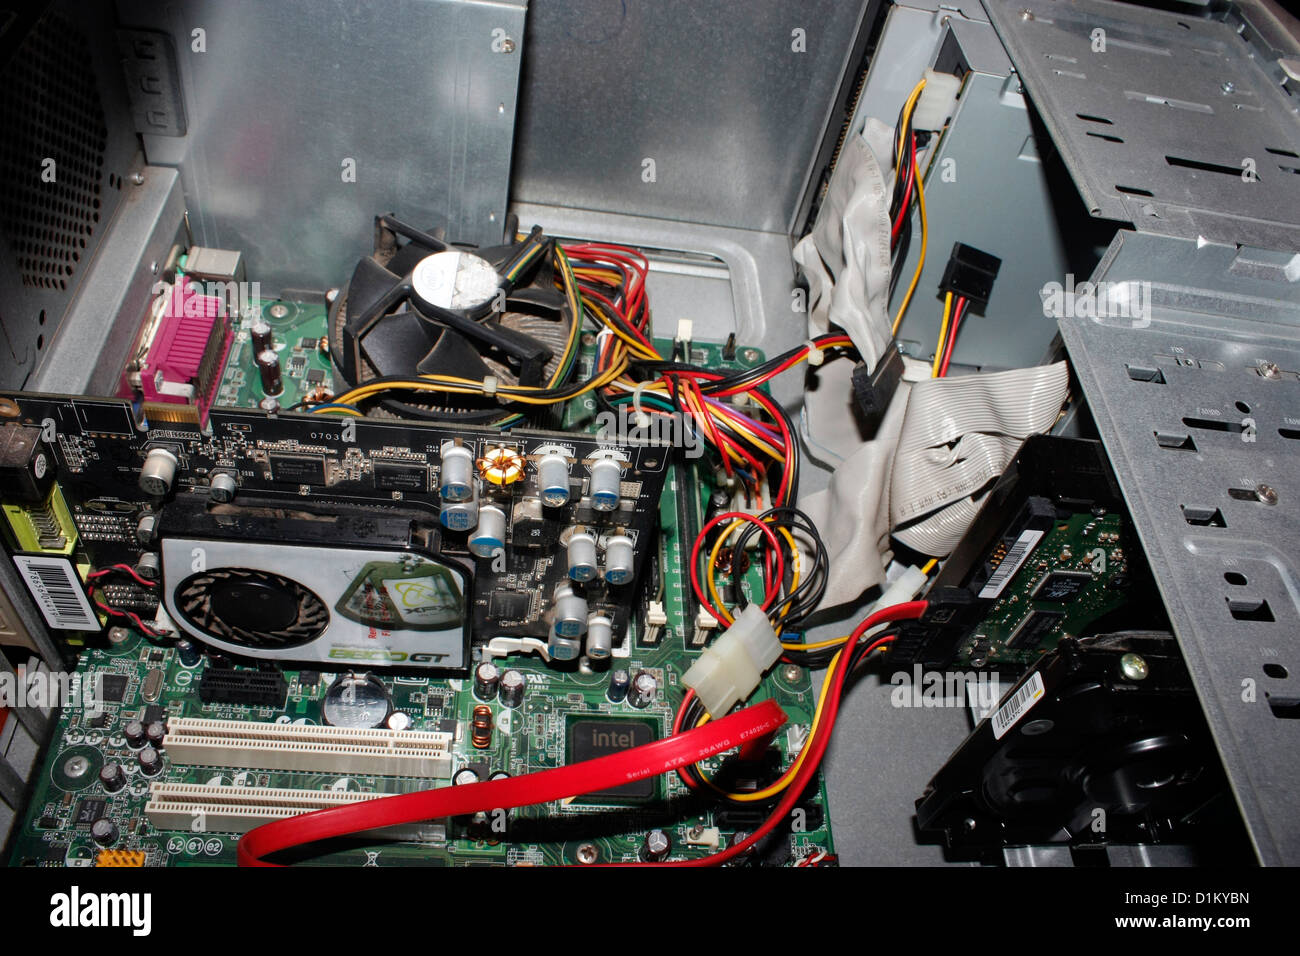 Un ordinateur de bureau PC avec cabinet ouvert montrant les pièces internes  Photo Stock - Alamy